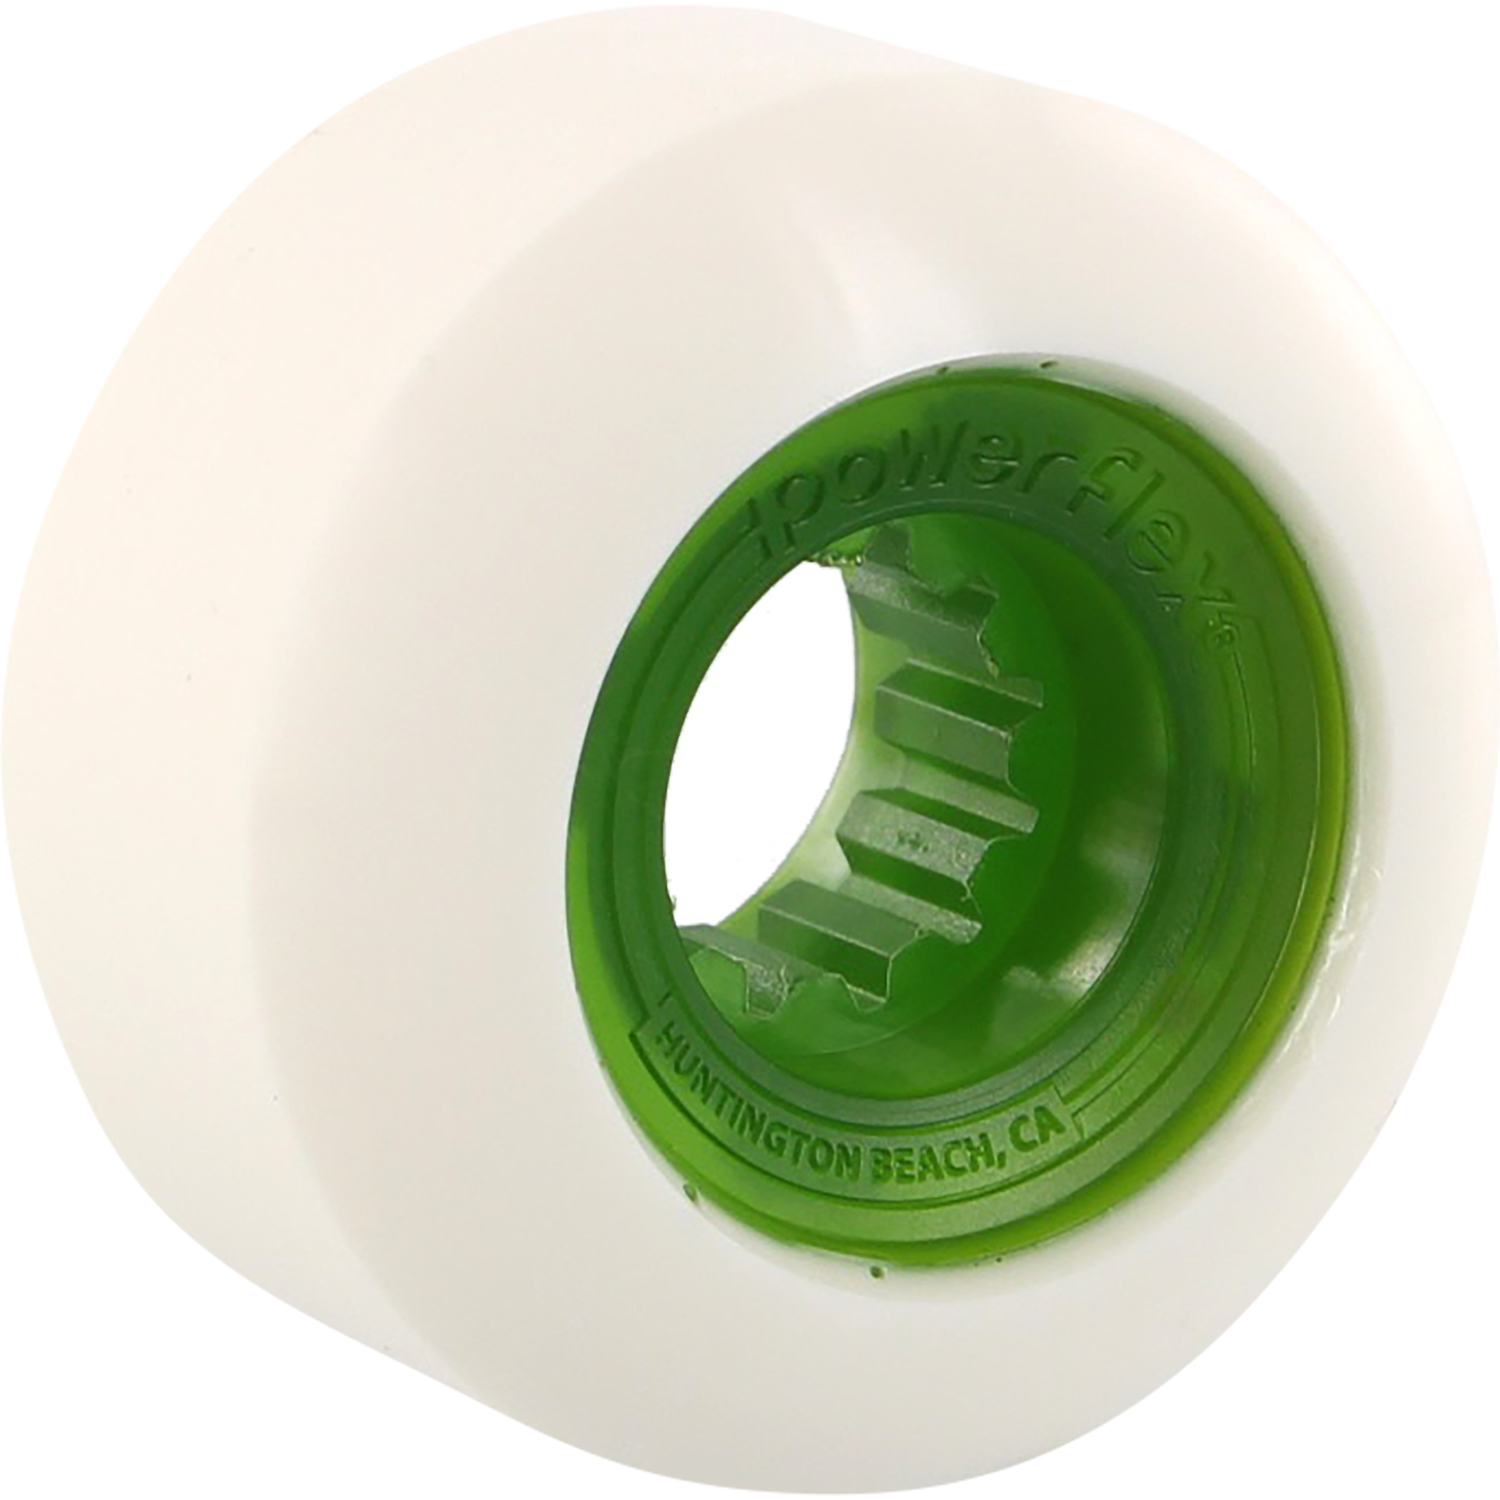 Powerflex Rock Candy 54mm 84b White/Clear.Green Skateboard Wheels (Set of 4)